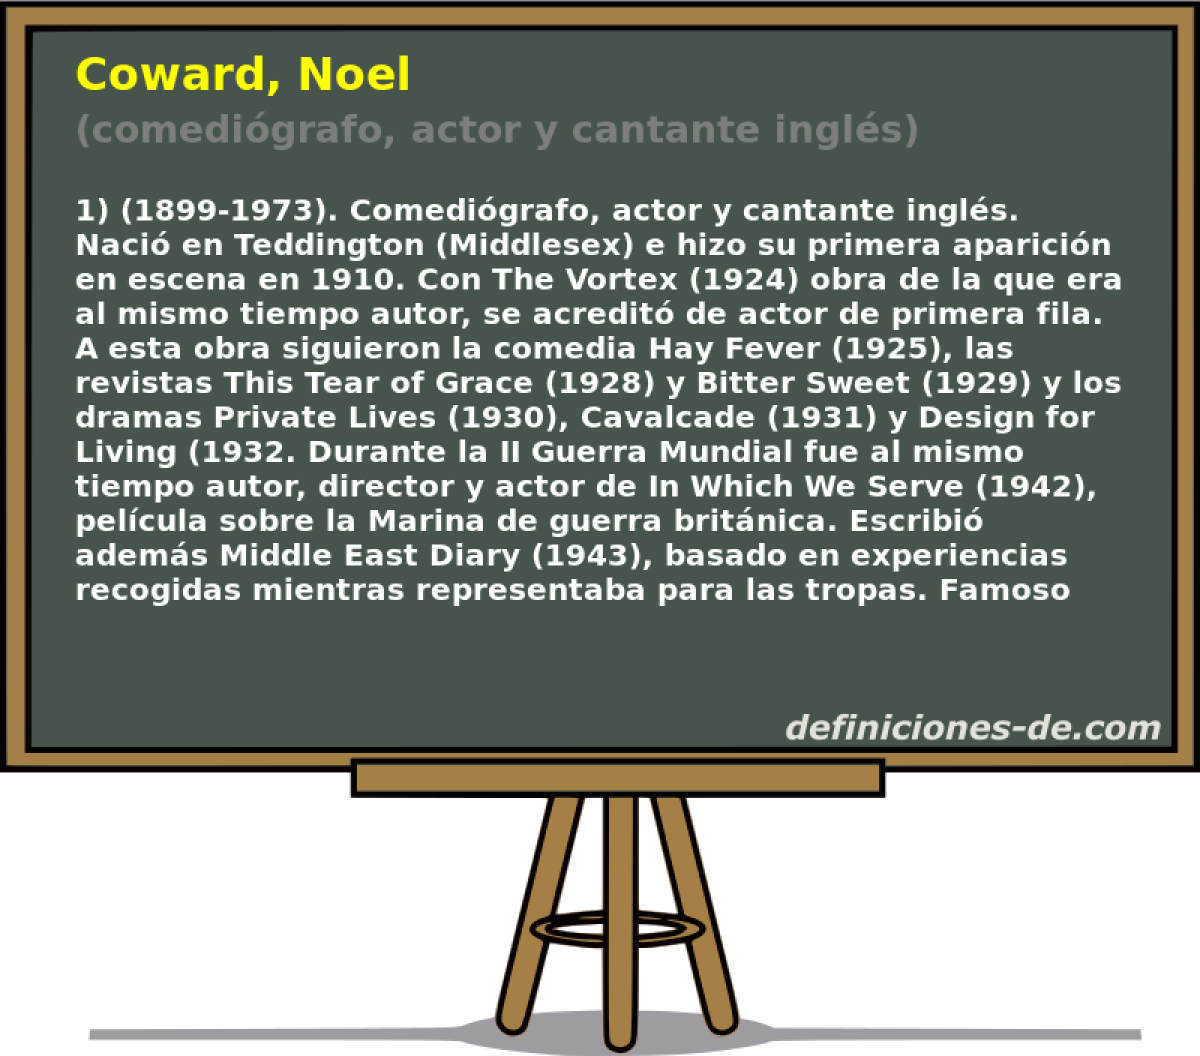 Coward, Noel (comedigrafo, actor y cantante ingls)